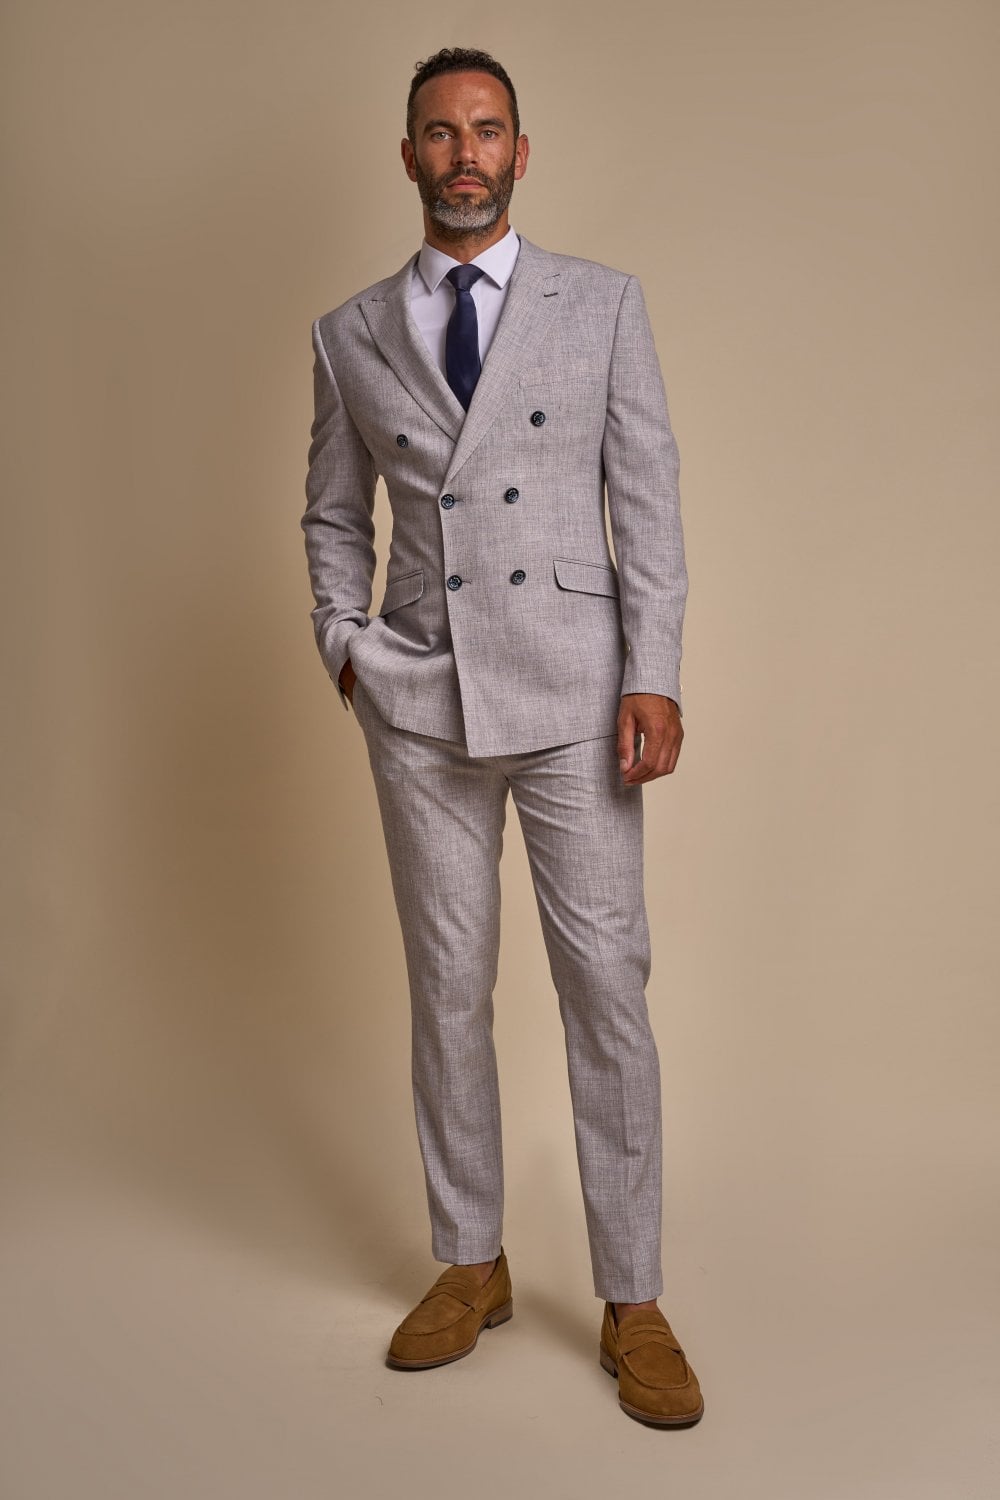 2 - teiliger Anzug - Doppelreihiger grauer Herrenanzug